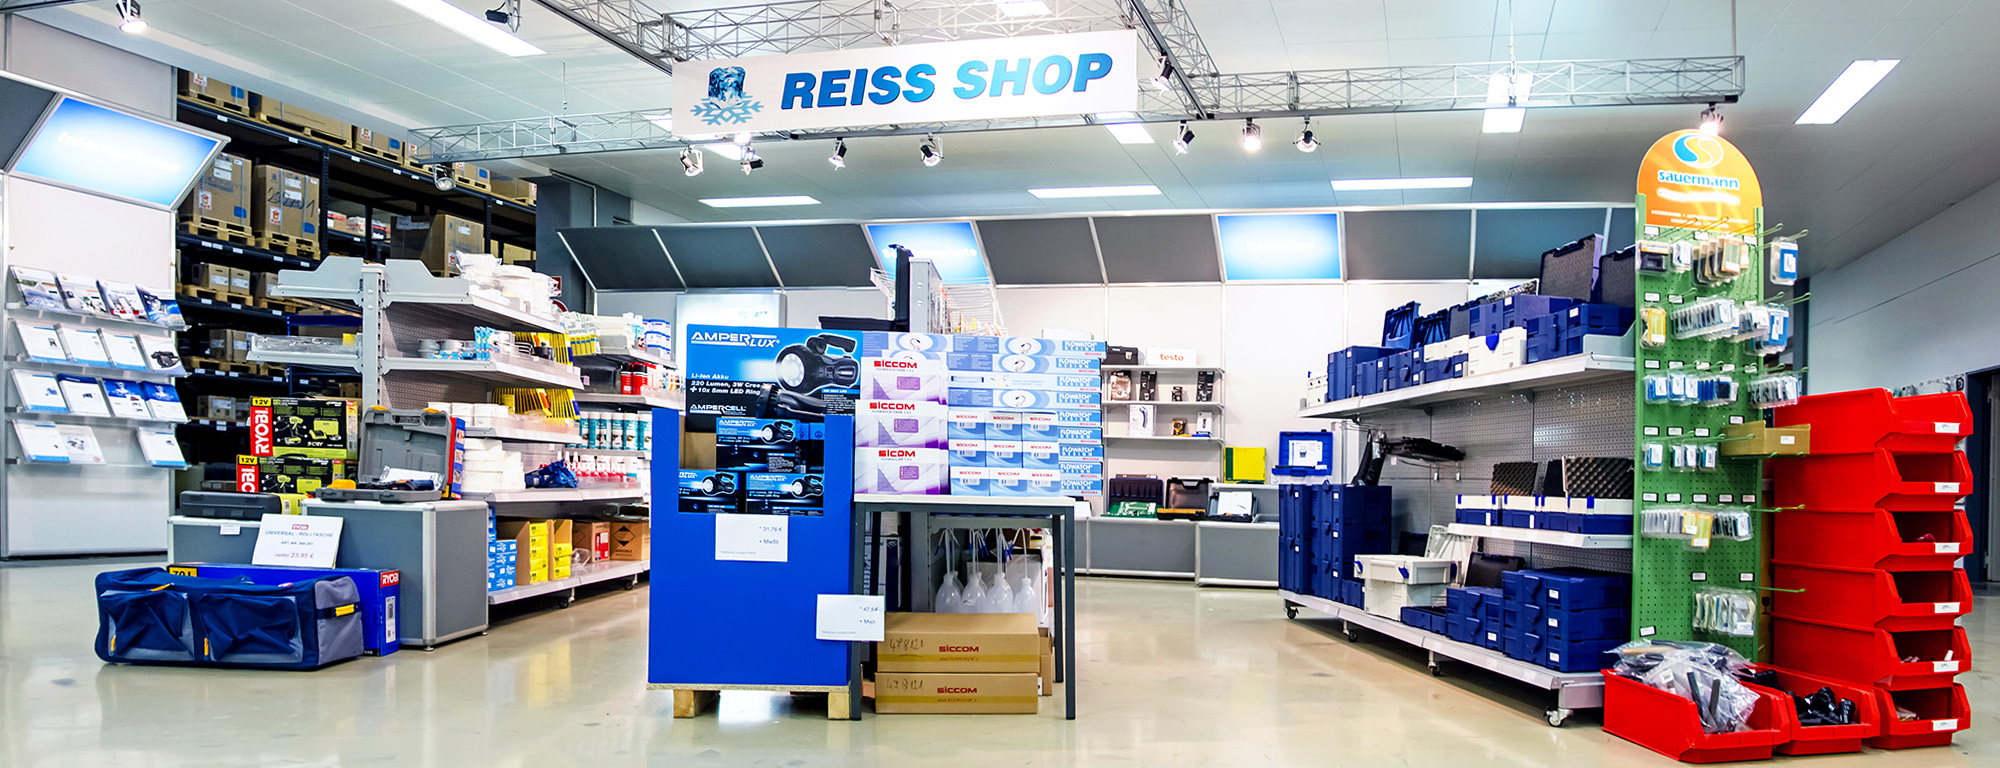 Reiss shop